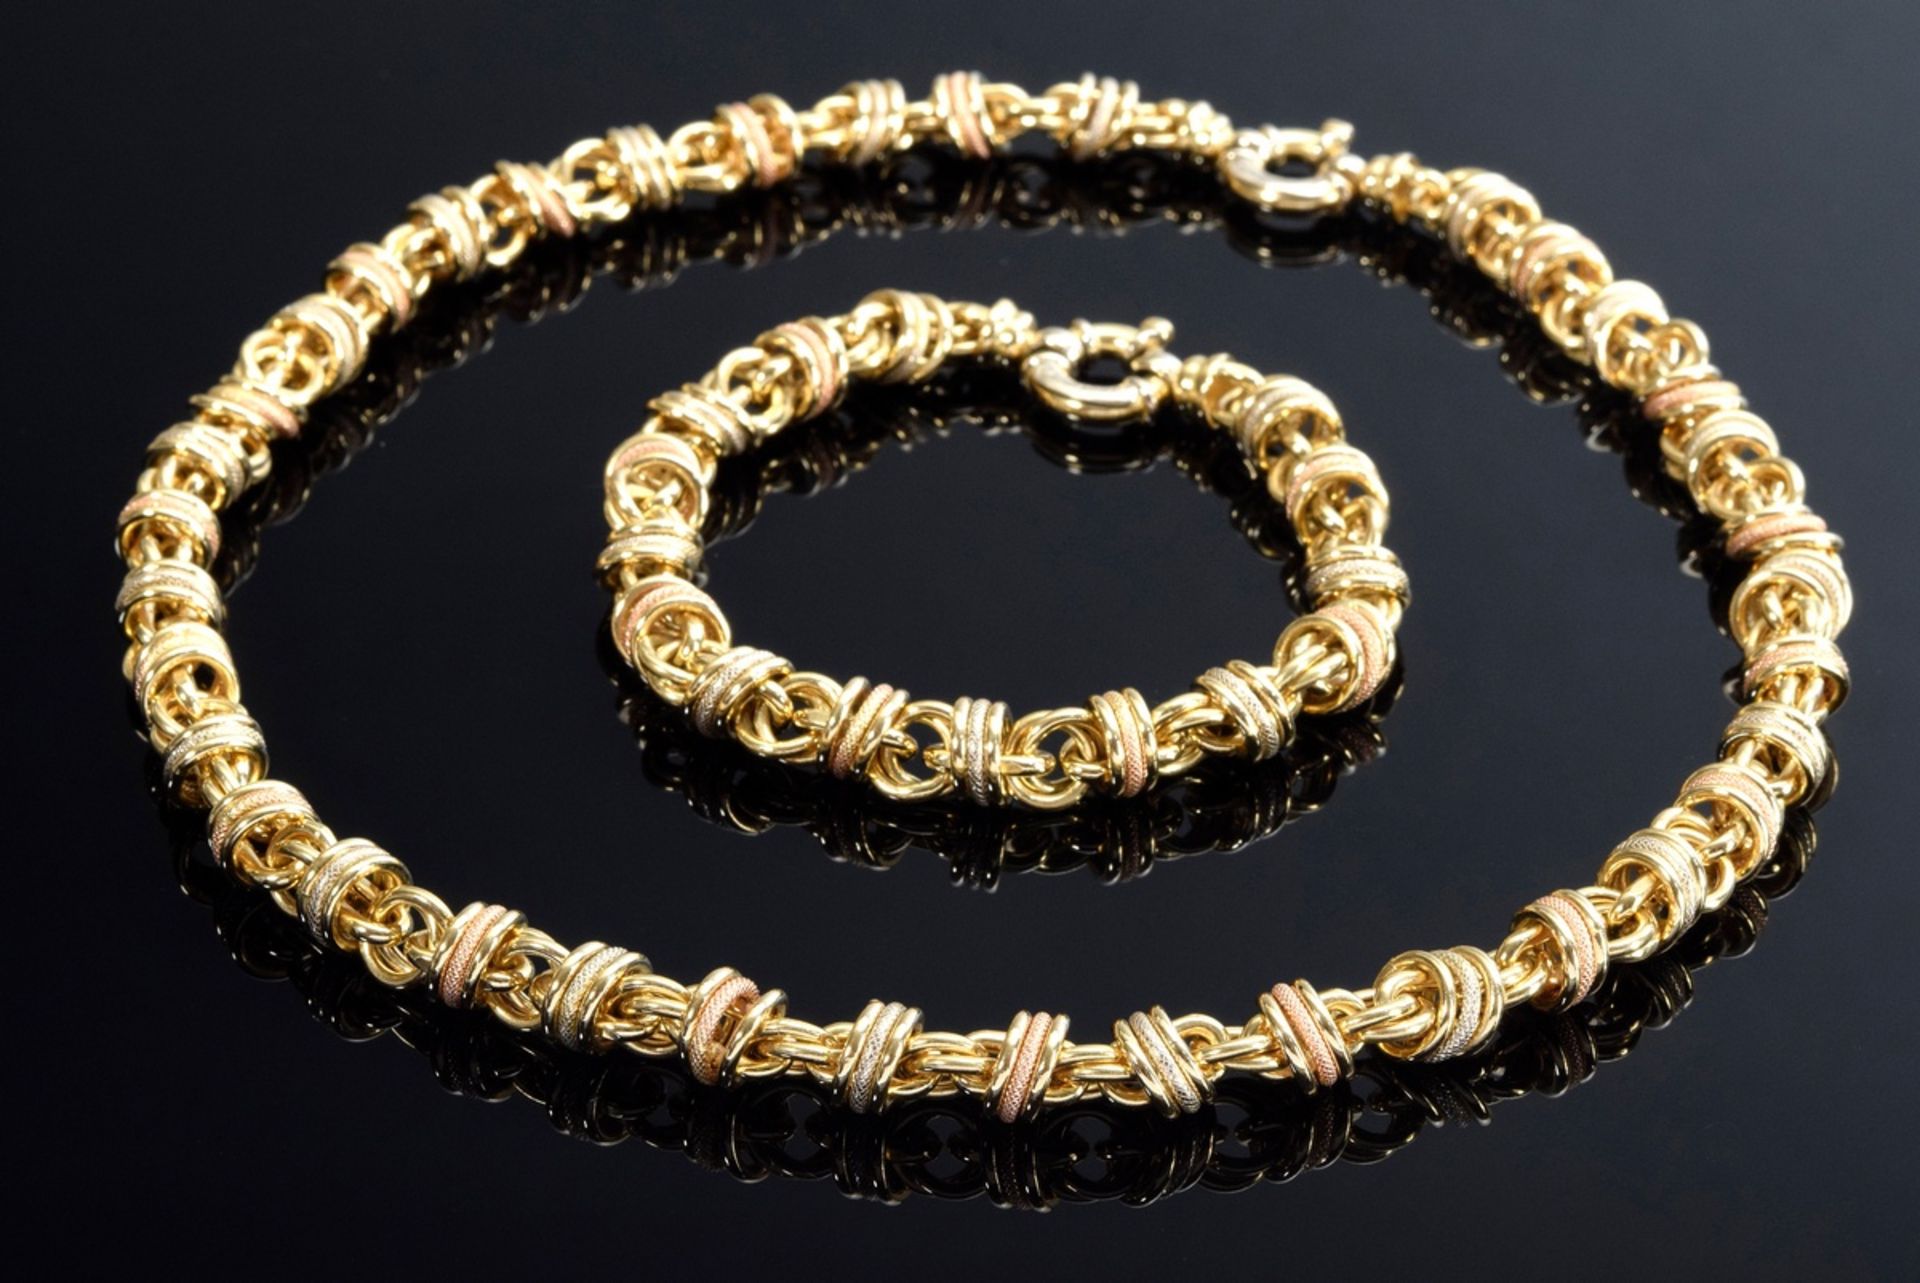 2 Teile diverser Tricolor Gold 750 Schmuck aus sich beweglichen Ringen: Collier (L. 45cm) und Armba